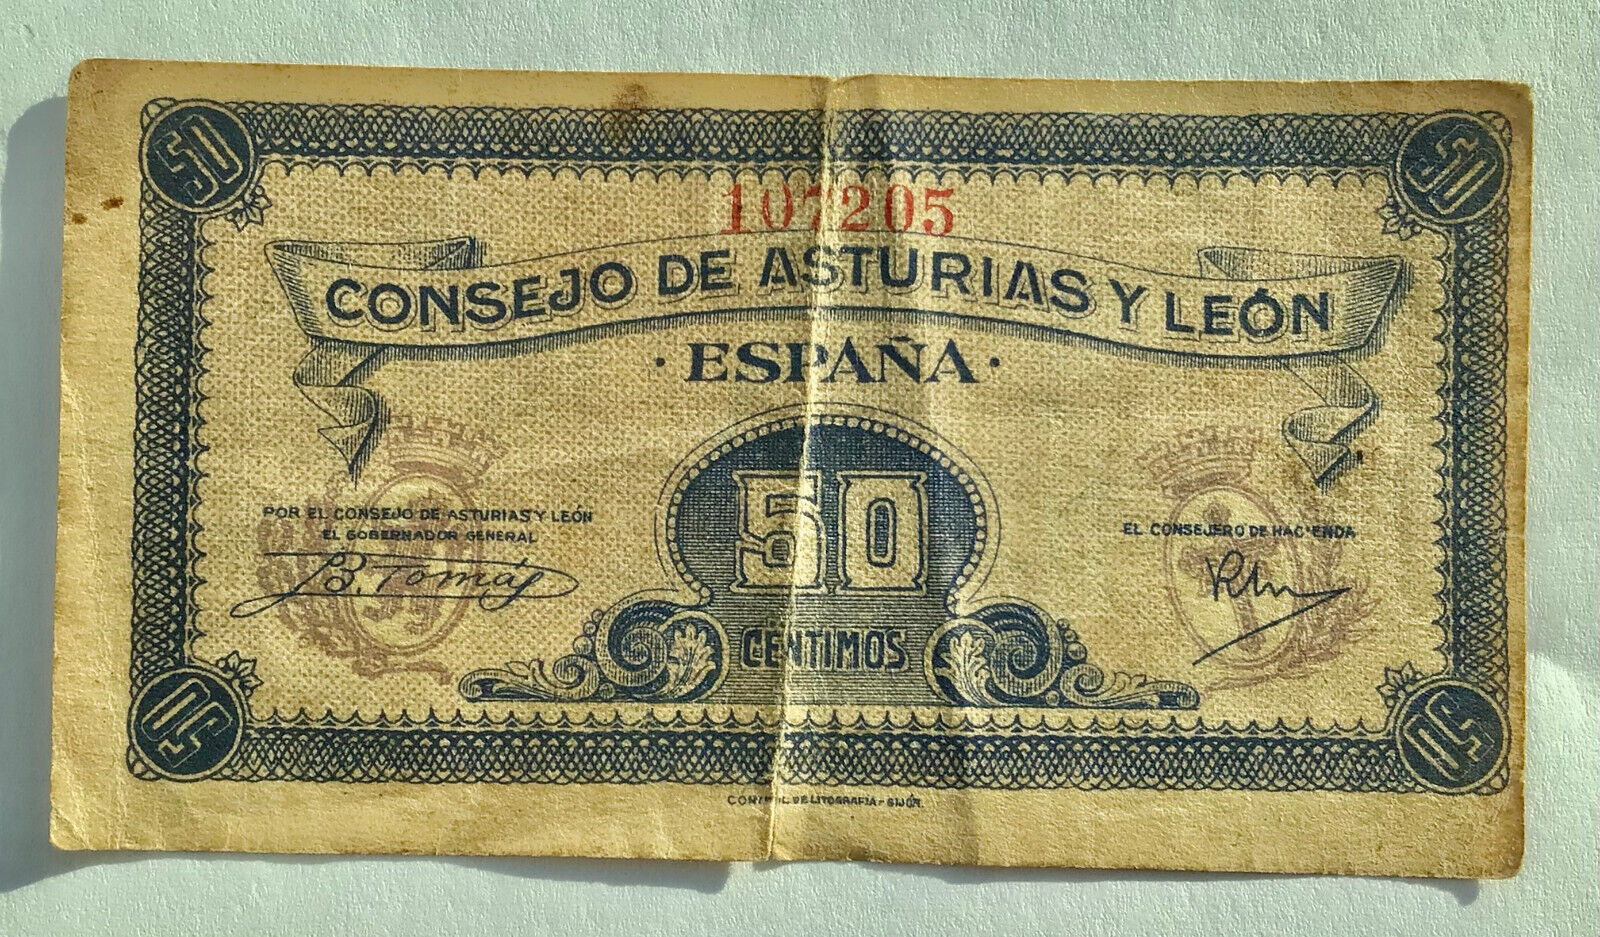 1937 Consejo  De  Asturias  Y  Leon 50 Centimos - Spanish Civil War Banknote